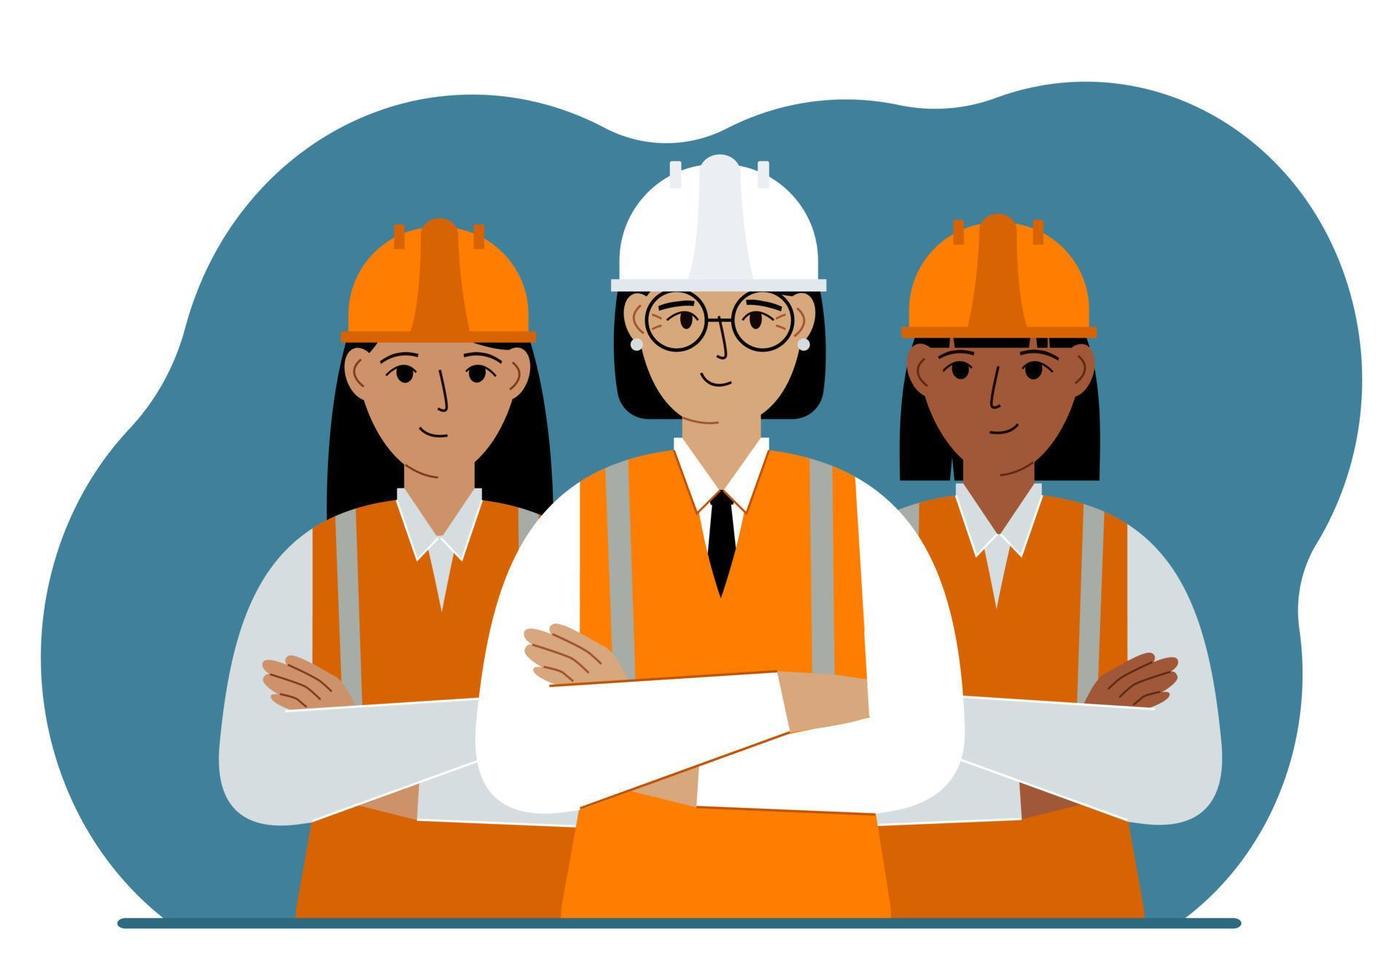 une équipe de travailleurs de la construction souriants portant des casques blancs et orange et des gilets orange. ingénieur et constructeurs. illustration vectorielle plate vecteur